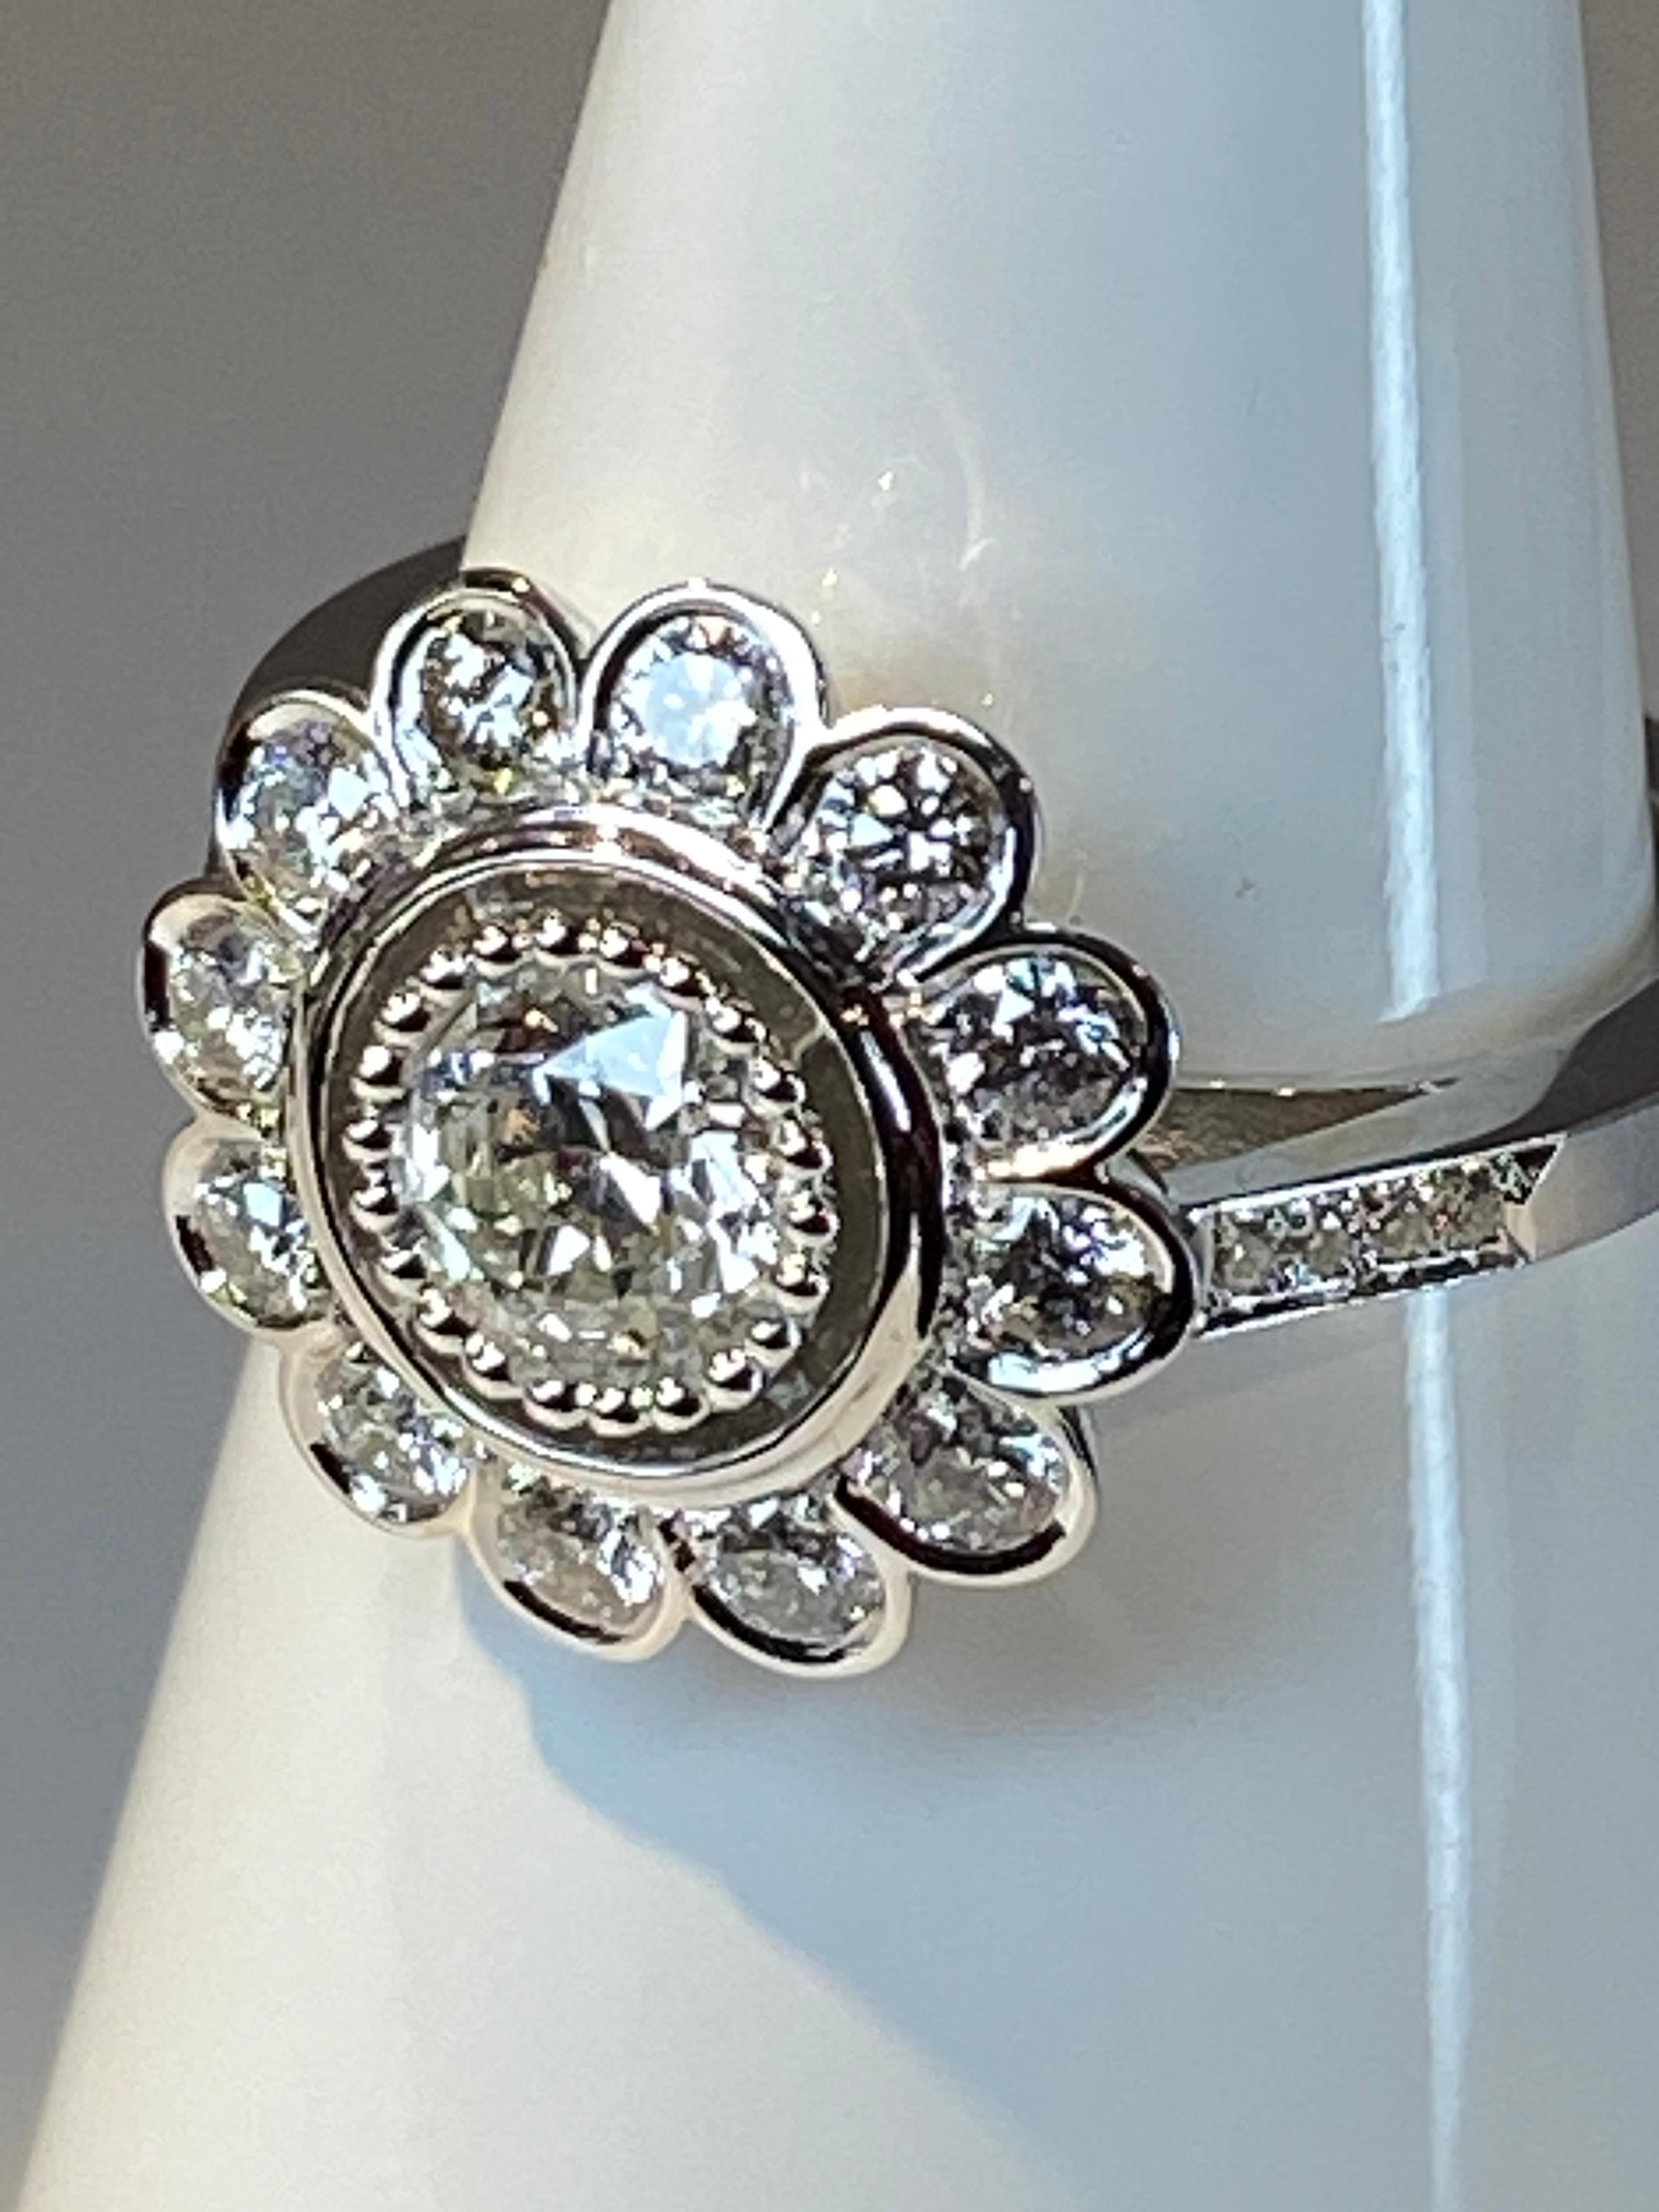 Ravissante bague en or 18 carat de modèle fleur «marguerite»ornée au centre d’un diamant de taille brillant pesant 0.48 carat entouré de 12 diamants de taille brillant pesant 0.54 carat. Le diamant central est en serti perlé et les diamants